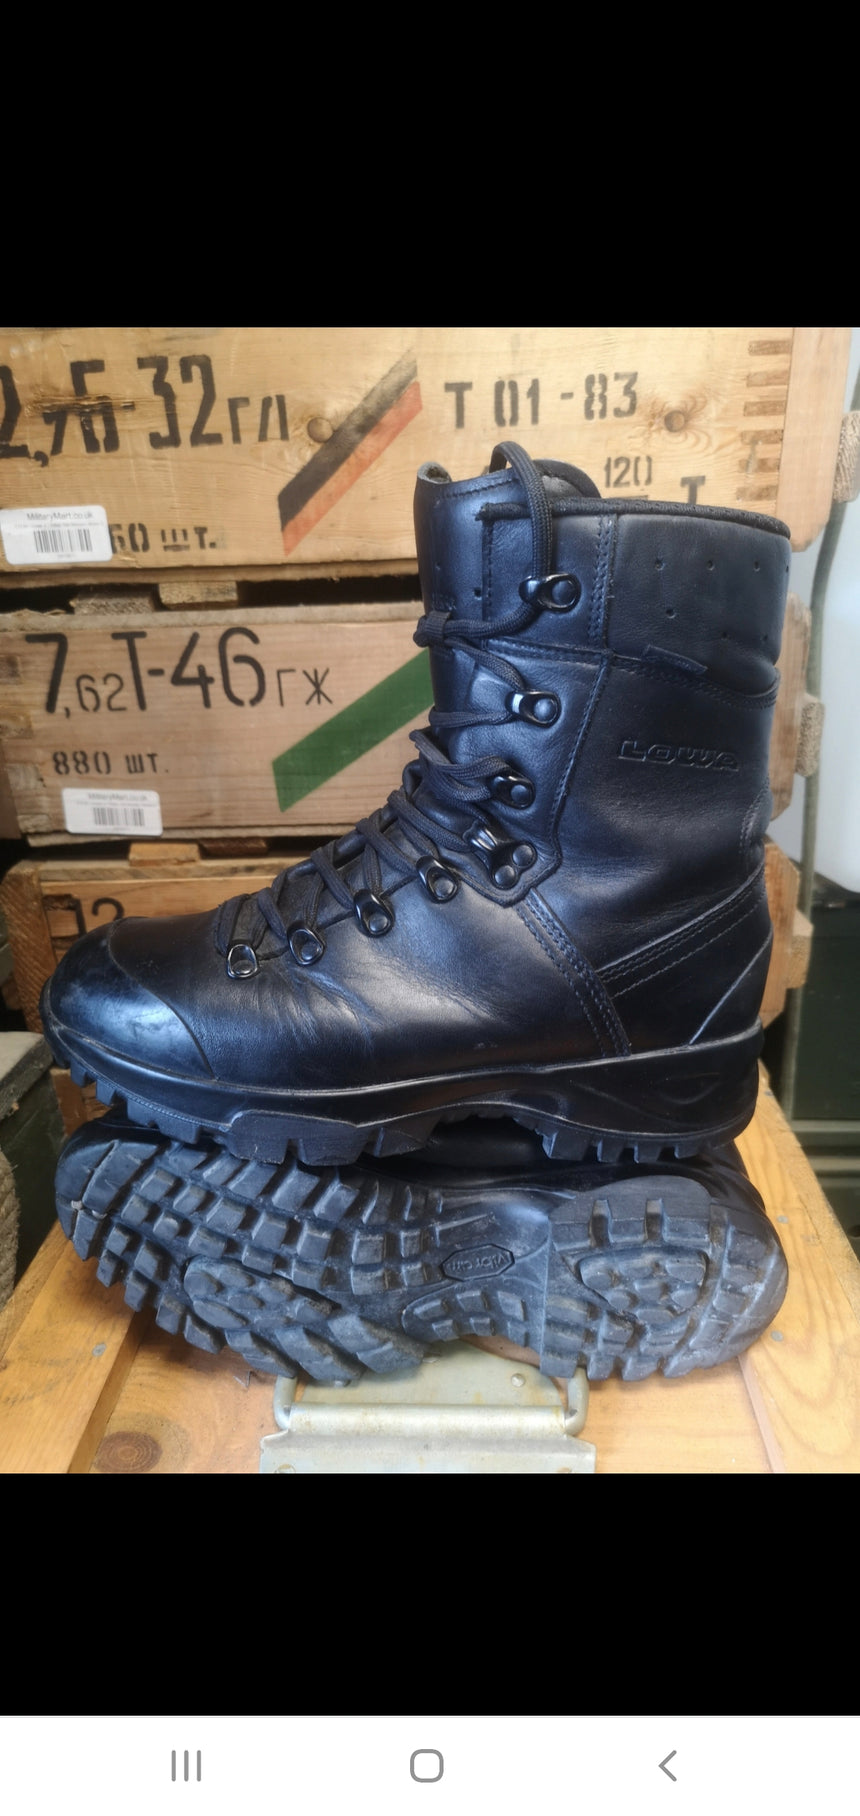 Alstublieft Tien jaar paars Lowa Elite Patrol German Army KSK Mountain Sf Boots Grade A – MilitaryMart